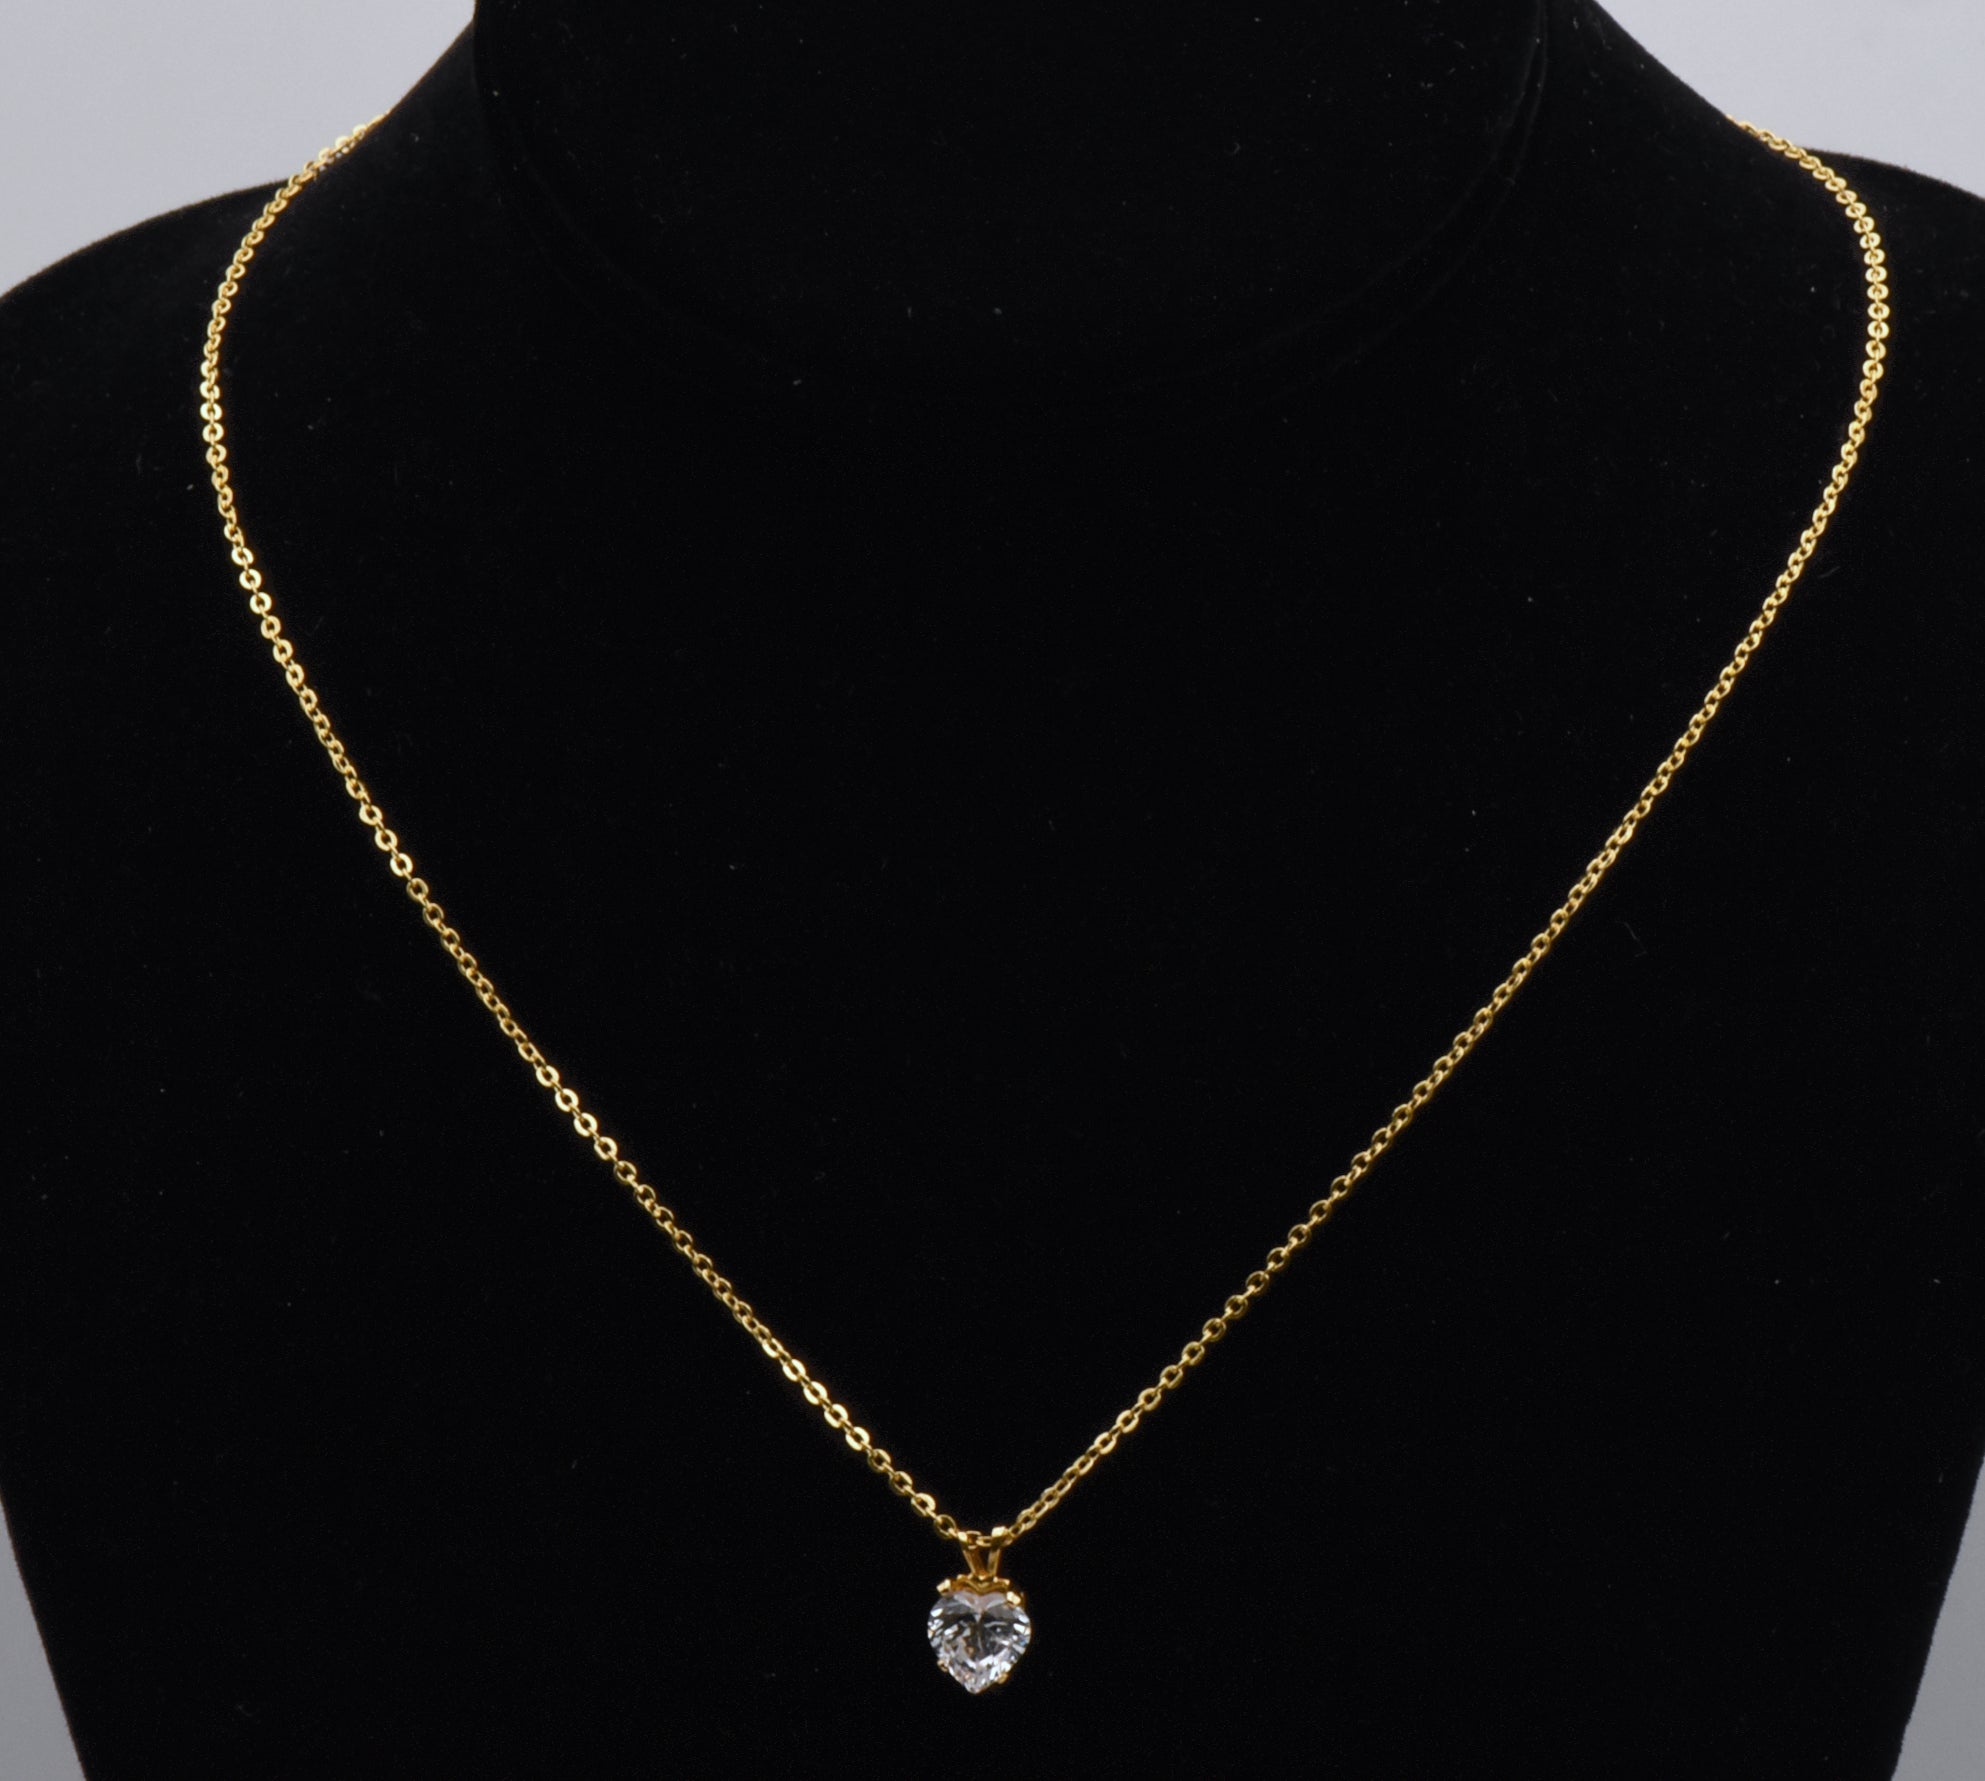 Vintage Heart Cut Cubic Zirconia Pendant Gold Tone Chain Necklace - 18"